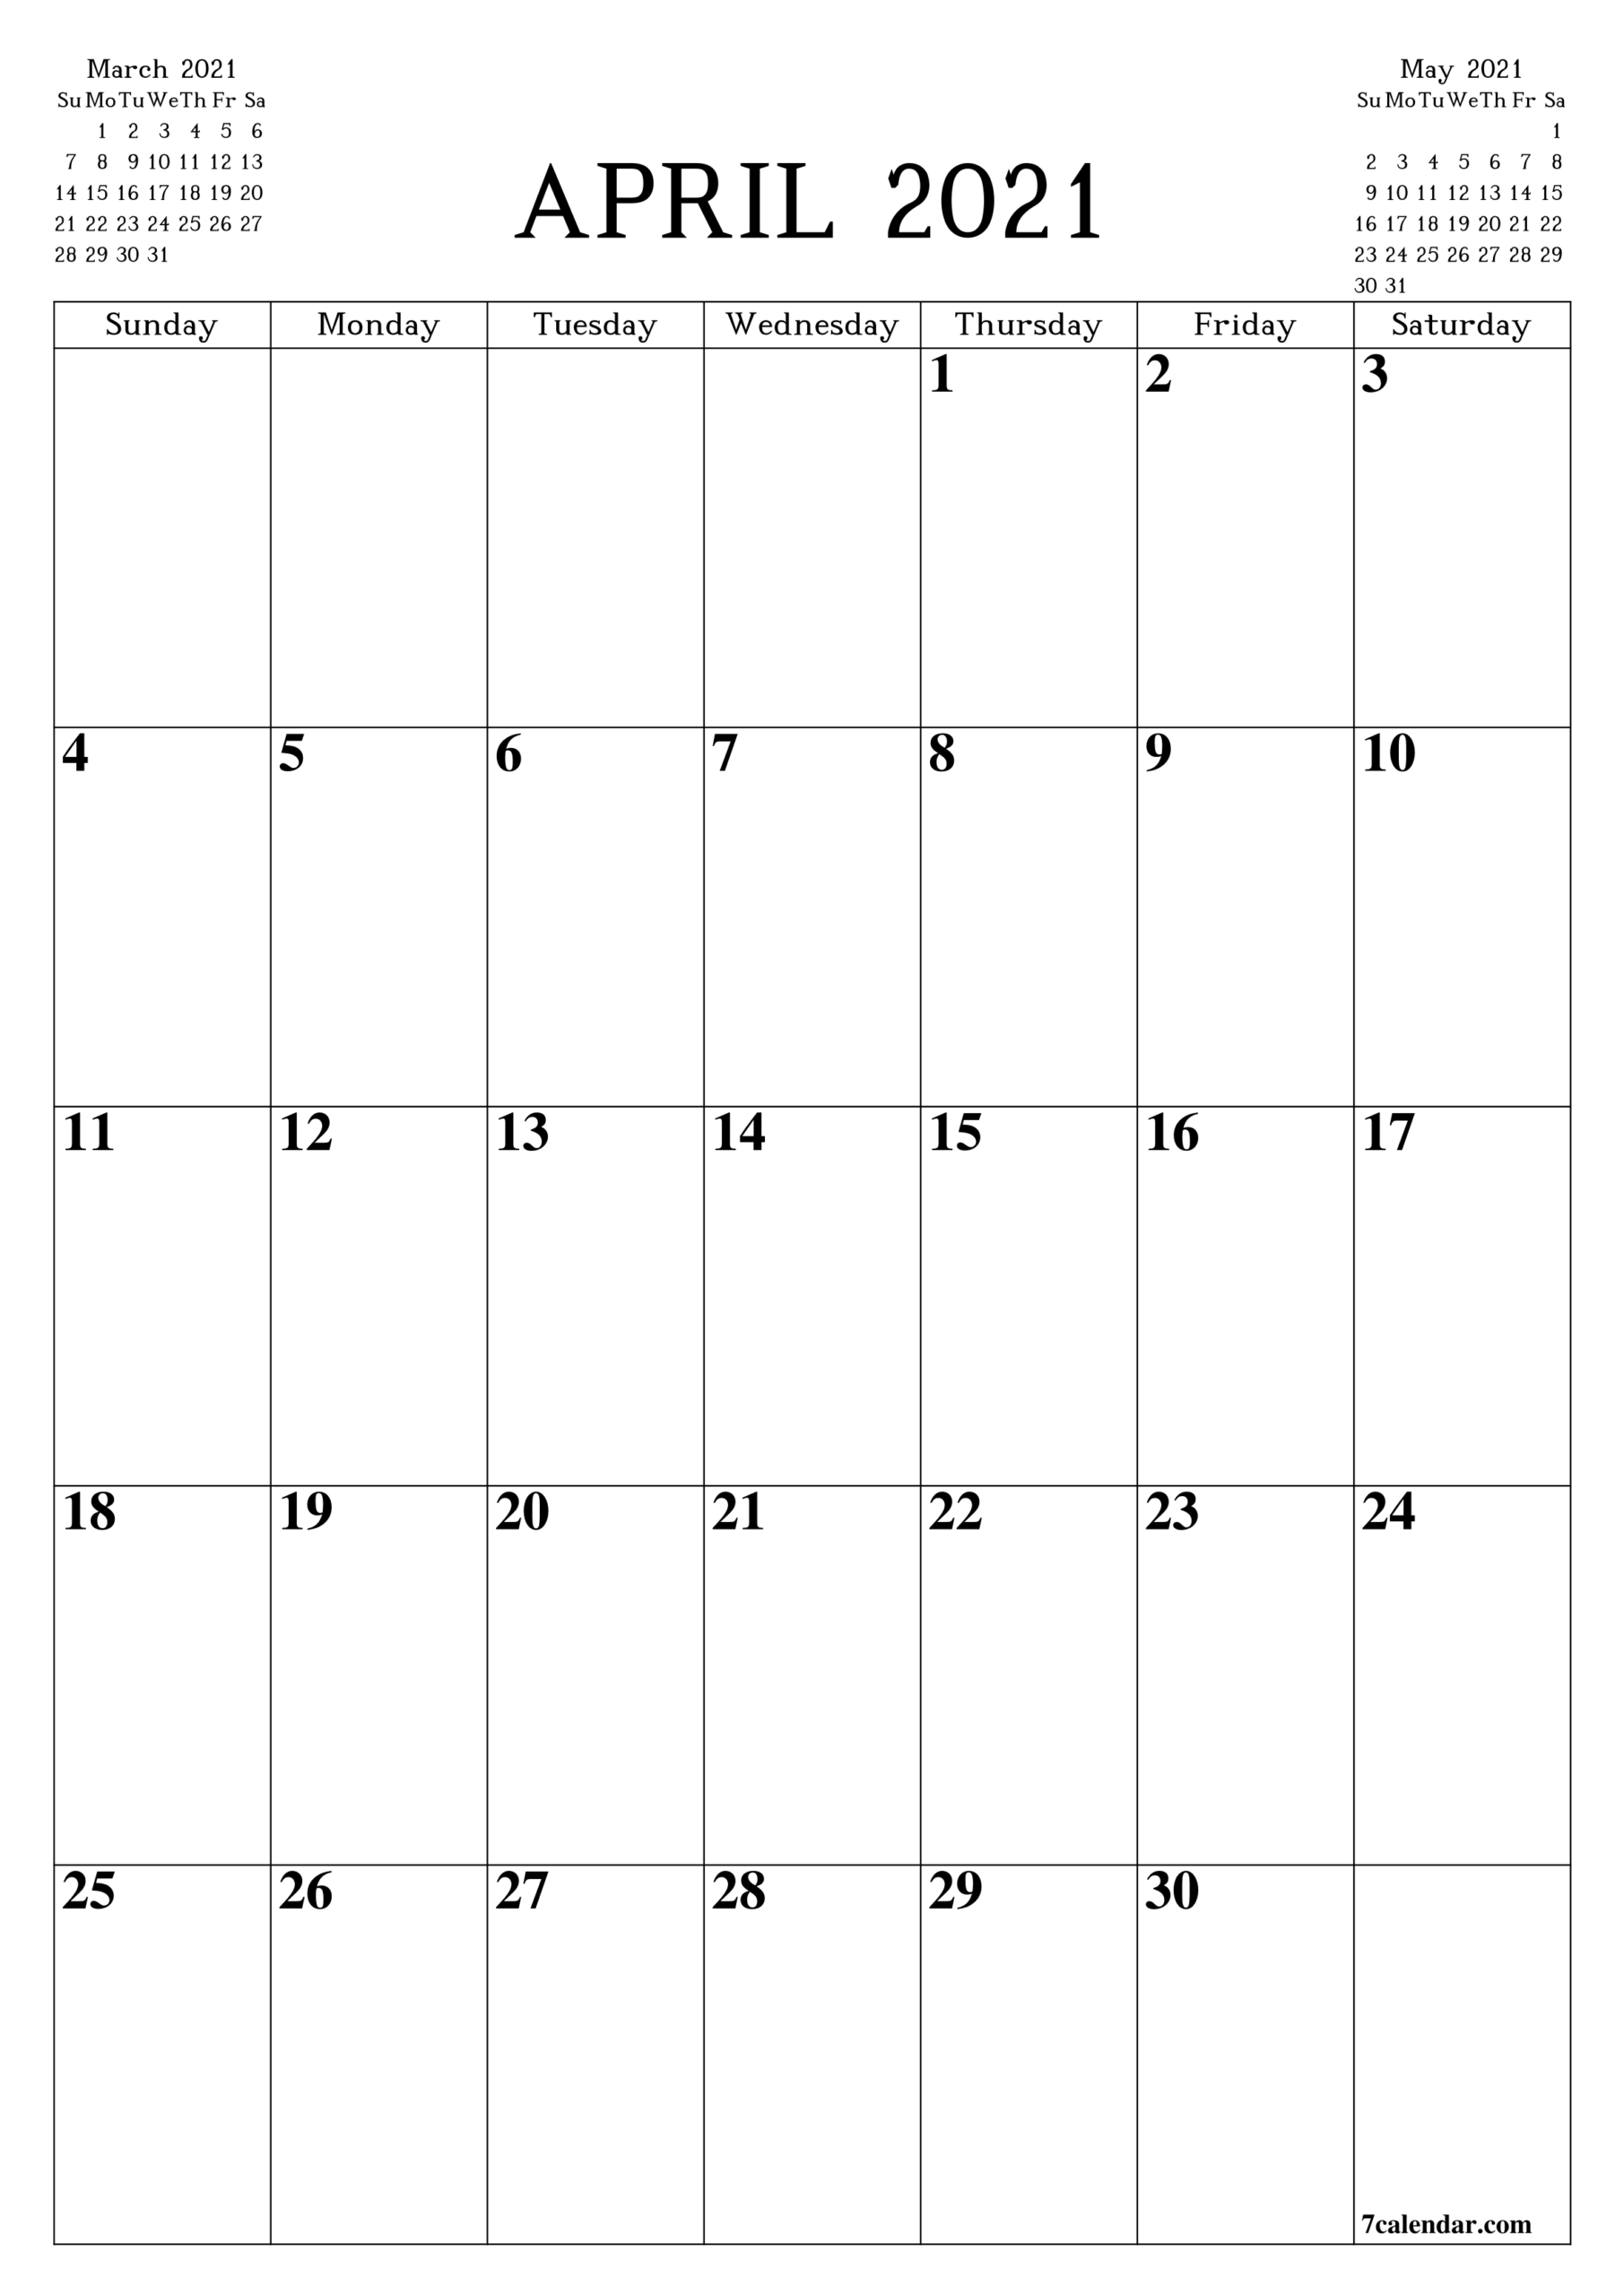 April 2021 Planner-2021 Employee Schedule Planner